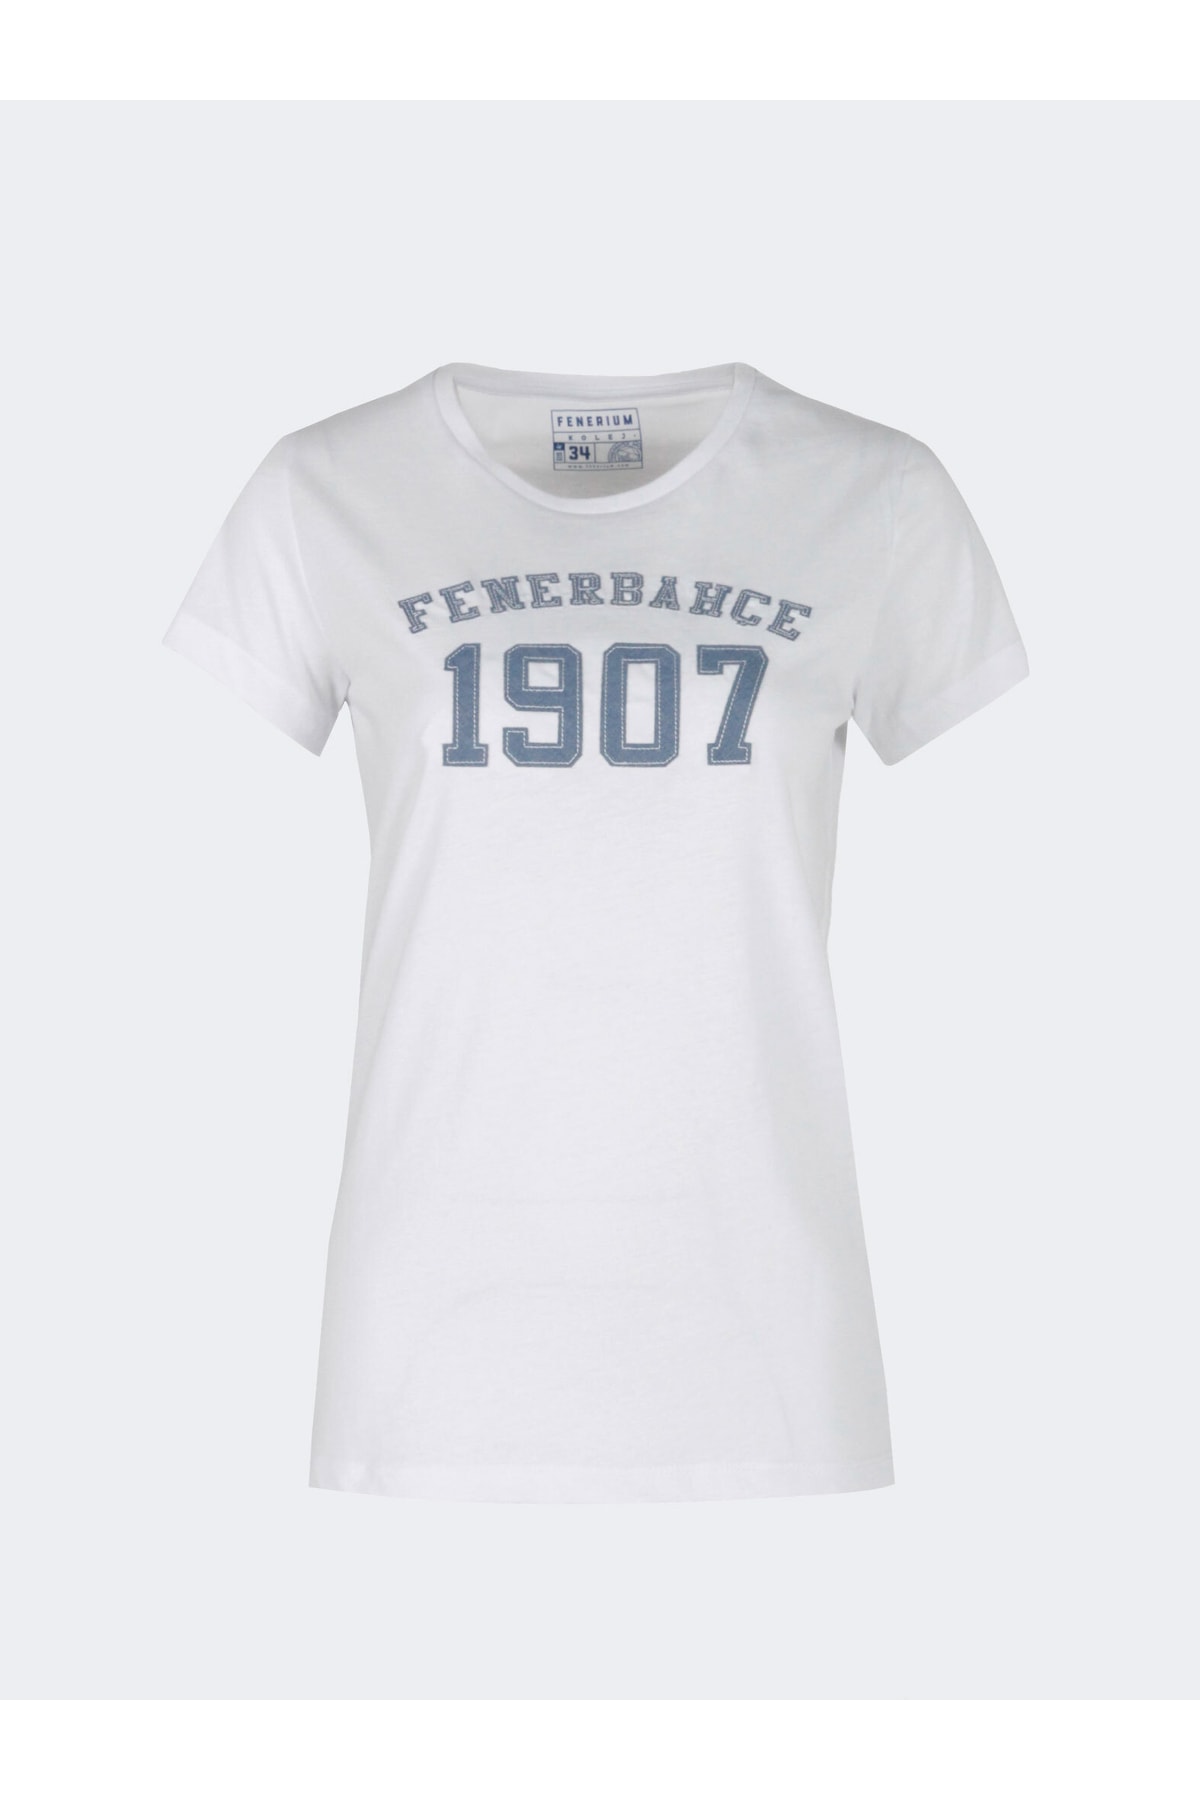 Fenerbahçe Kadın Kolej 1907 Denim Patch T-shirt